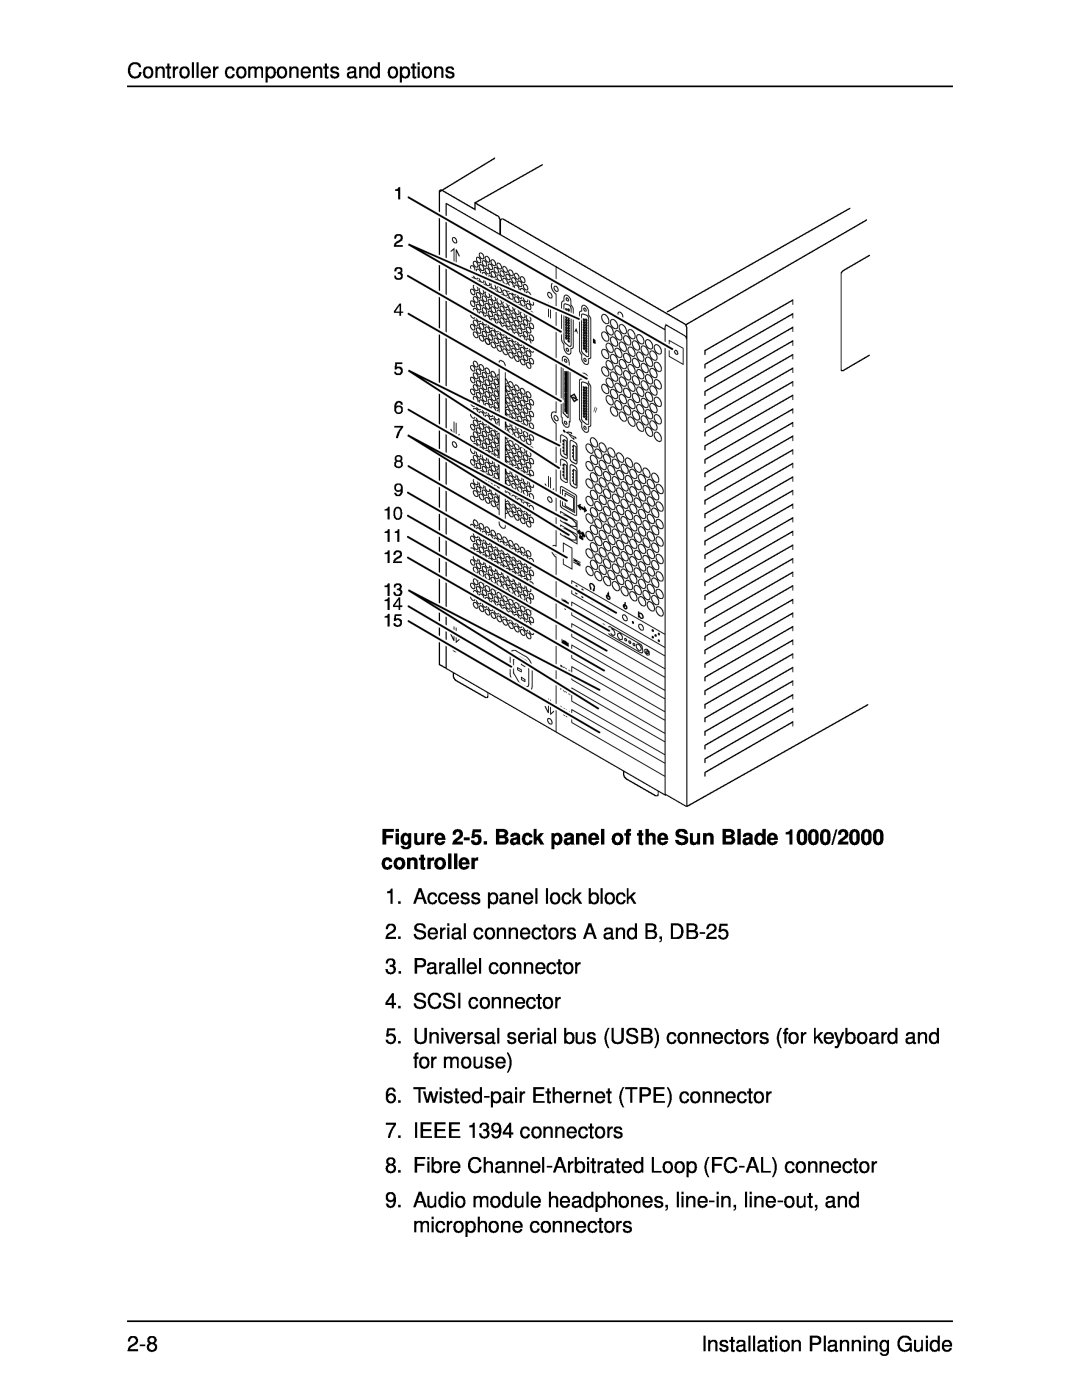 Xerox 155, 135, 115 manual 5. Back panel of the Sun Blade 1000/2000 controller 